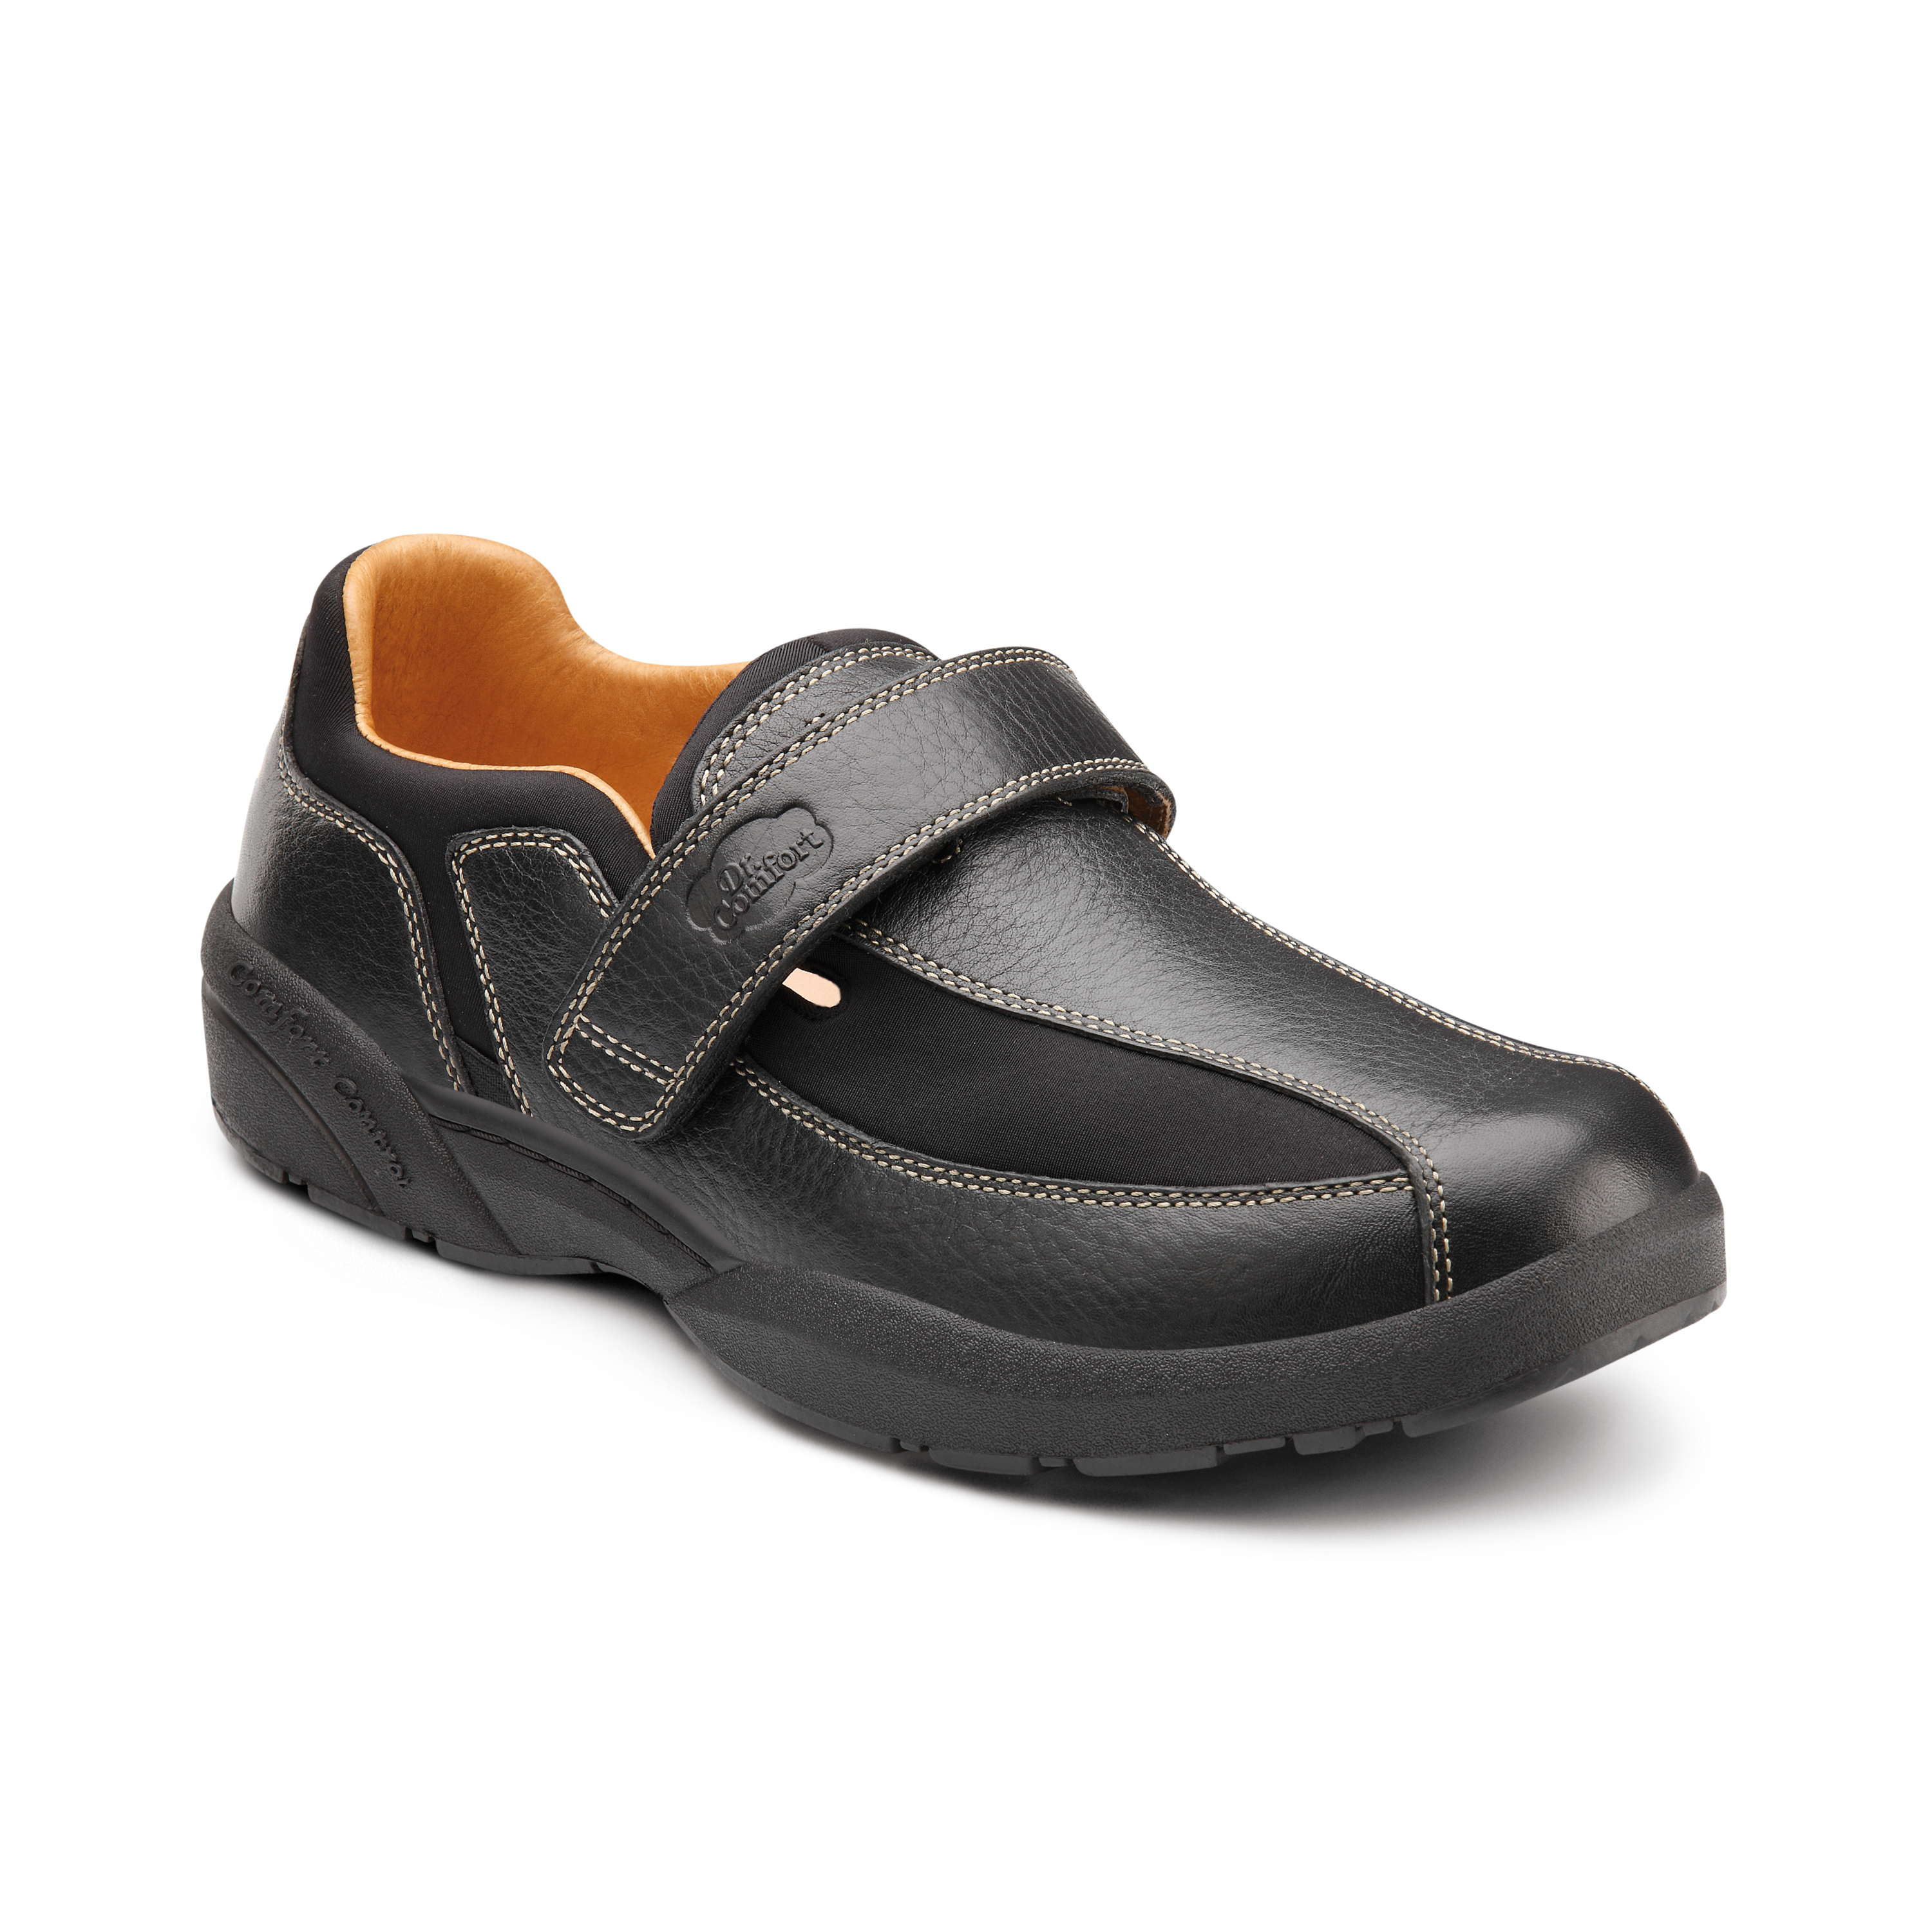 Produktbild Orthopädische Schuhe, Freizeitschuh aus flexiblem Lycra®, mit Lederbesatz und Klettverschluss